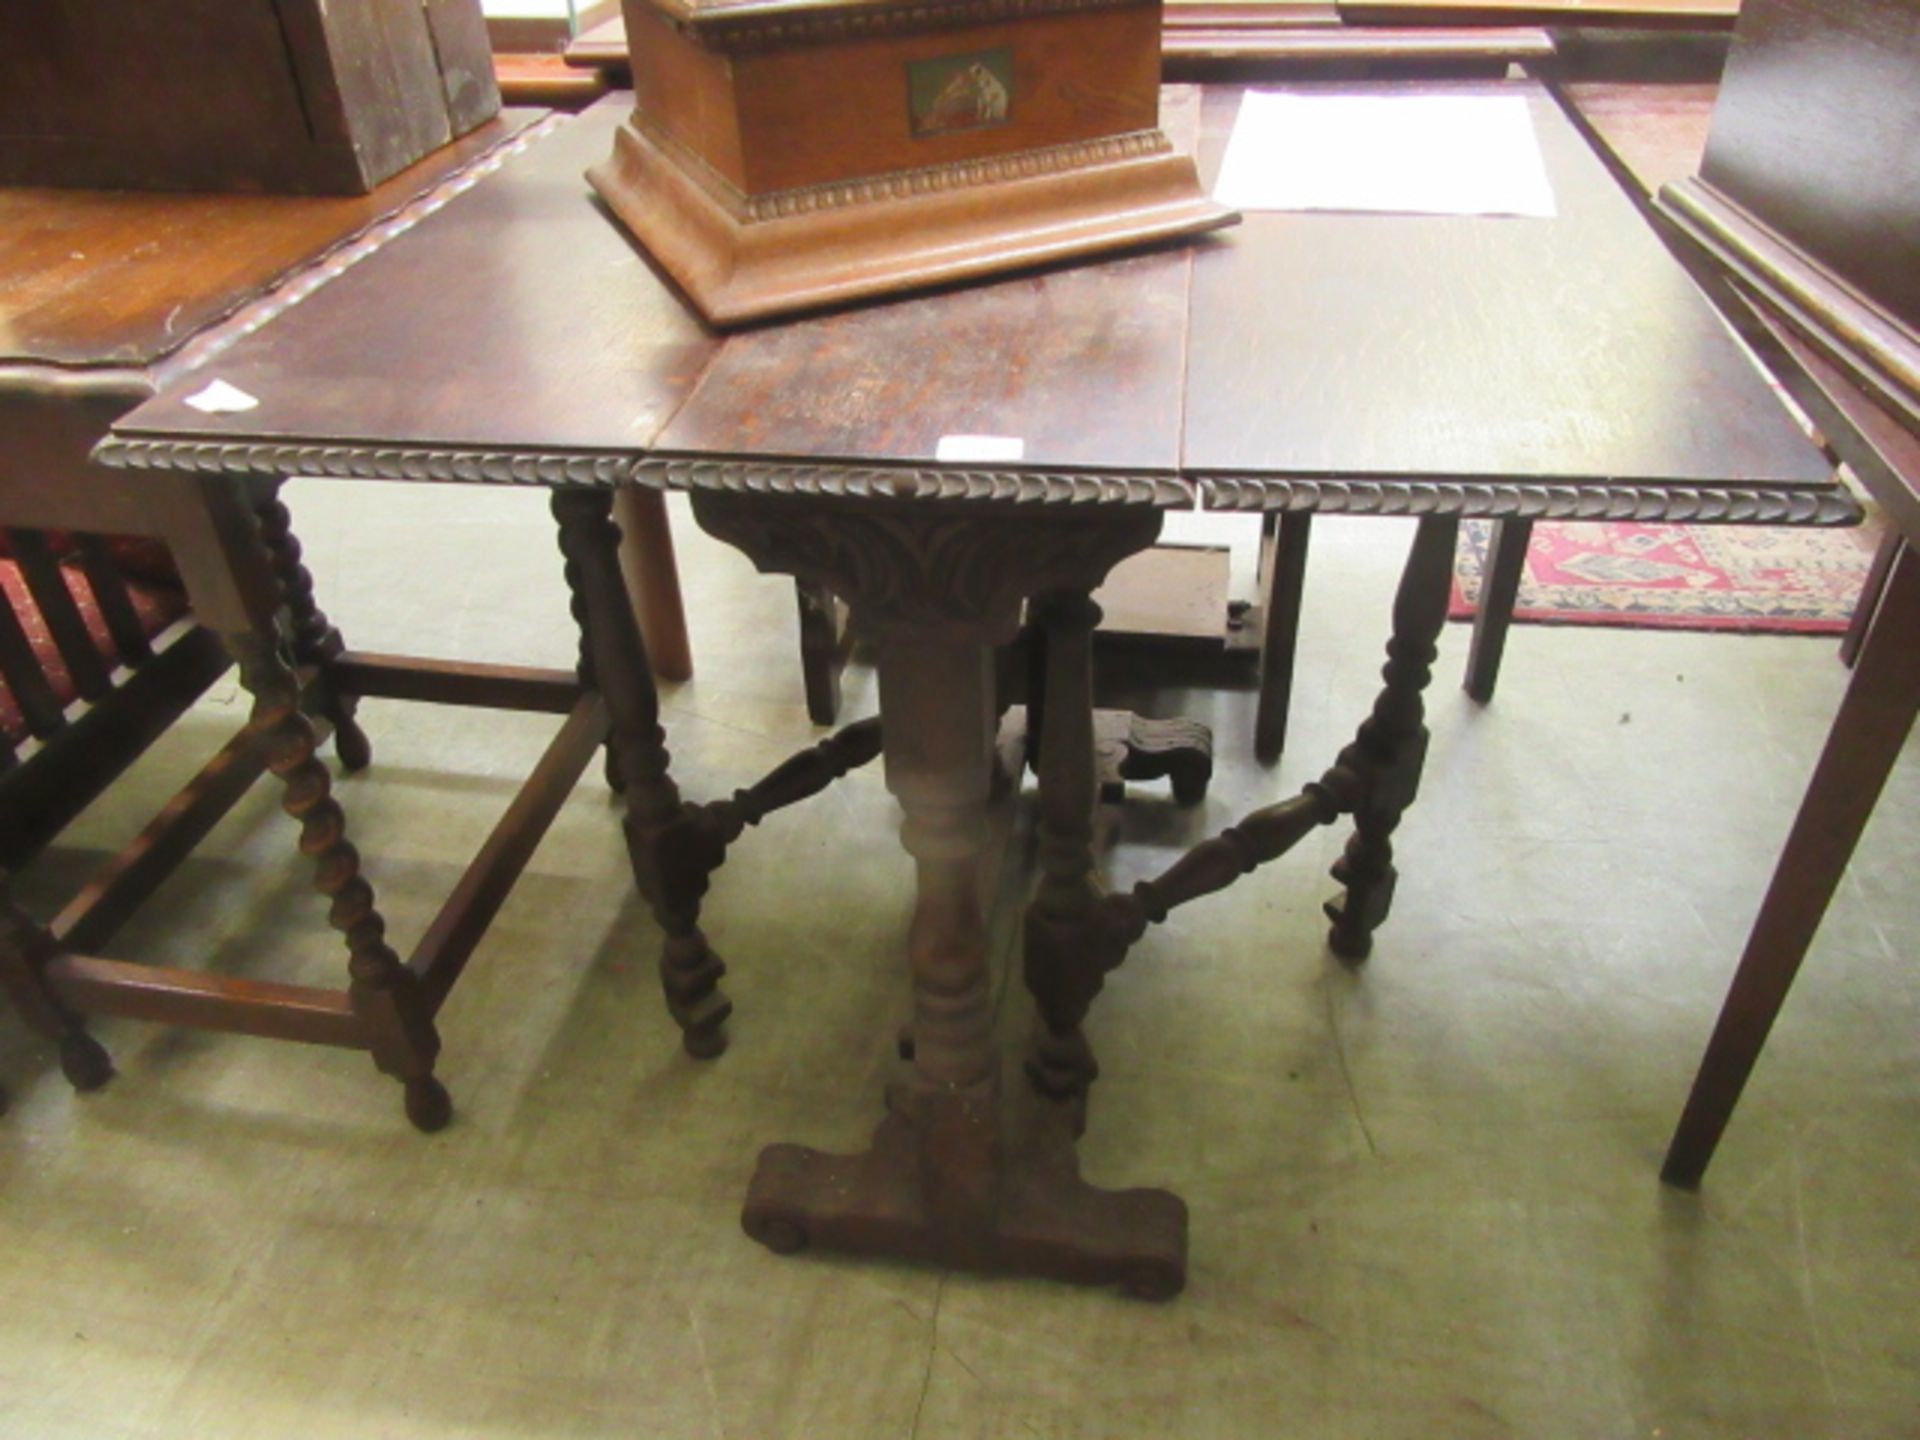 A small gate leg table